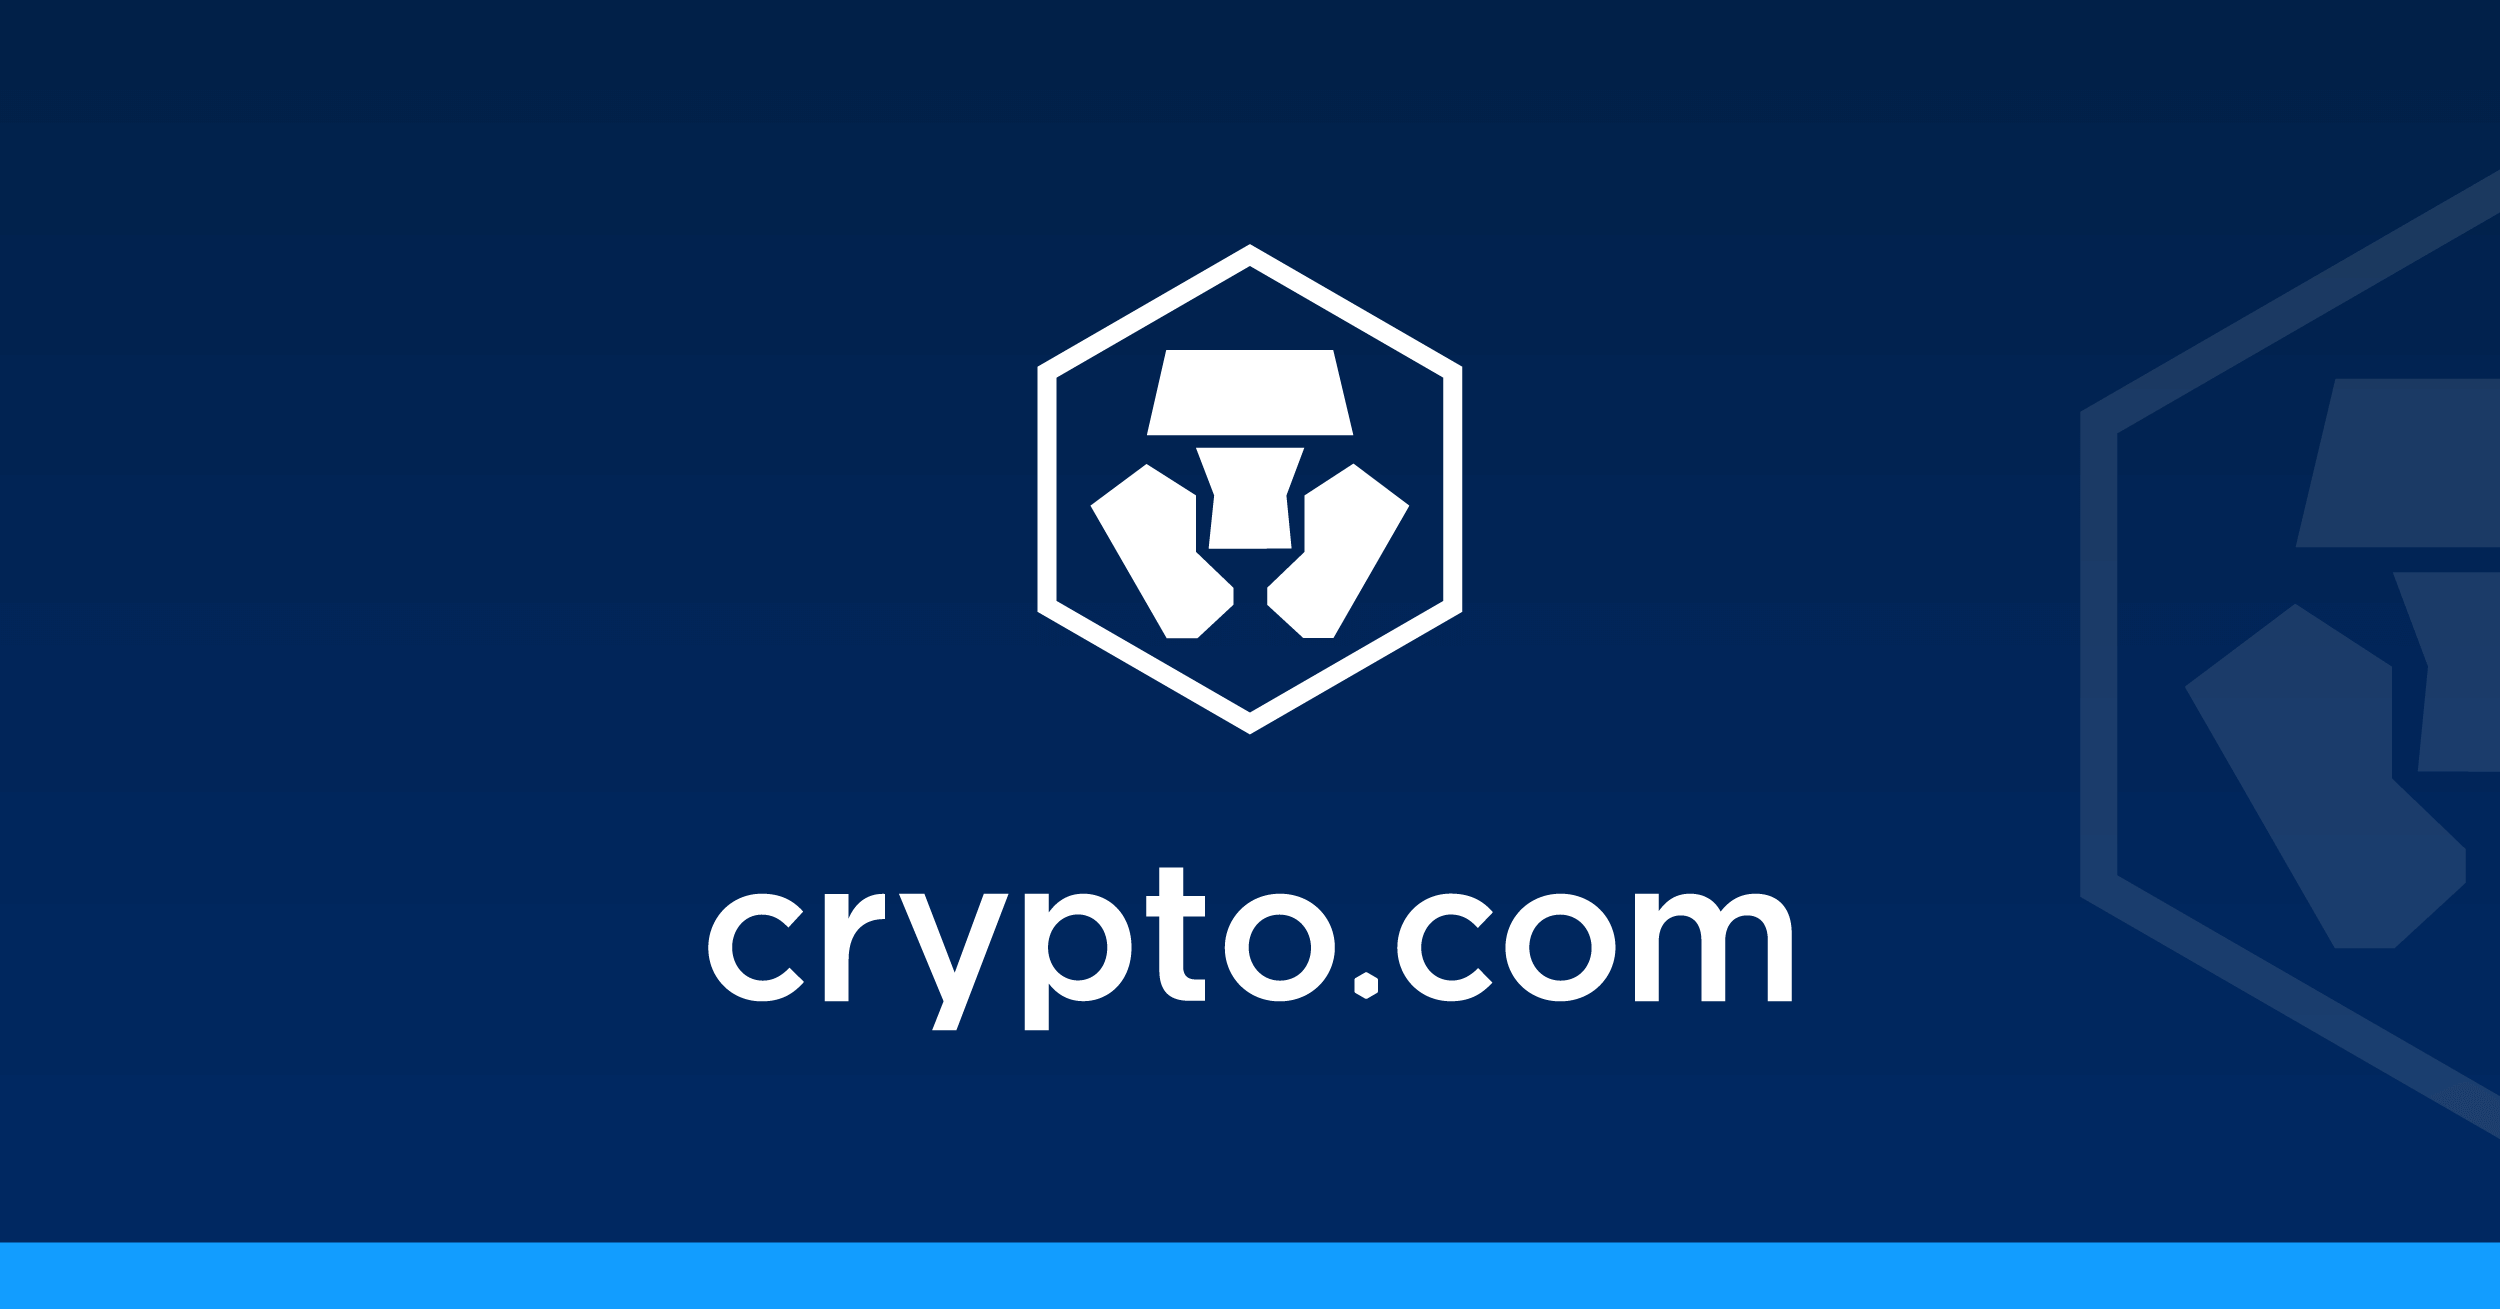 crypto.com financials